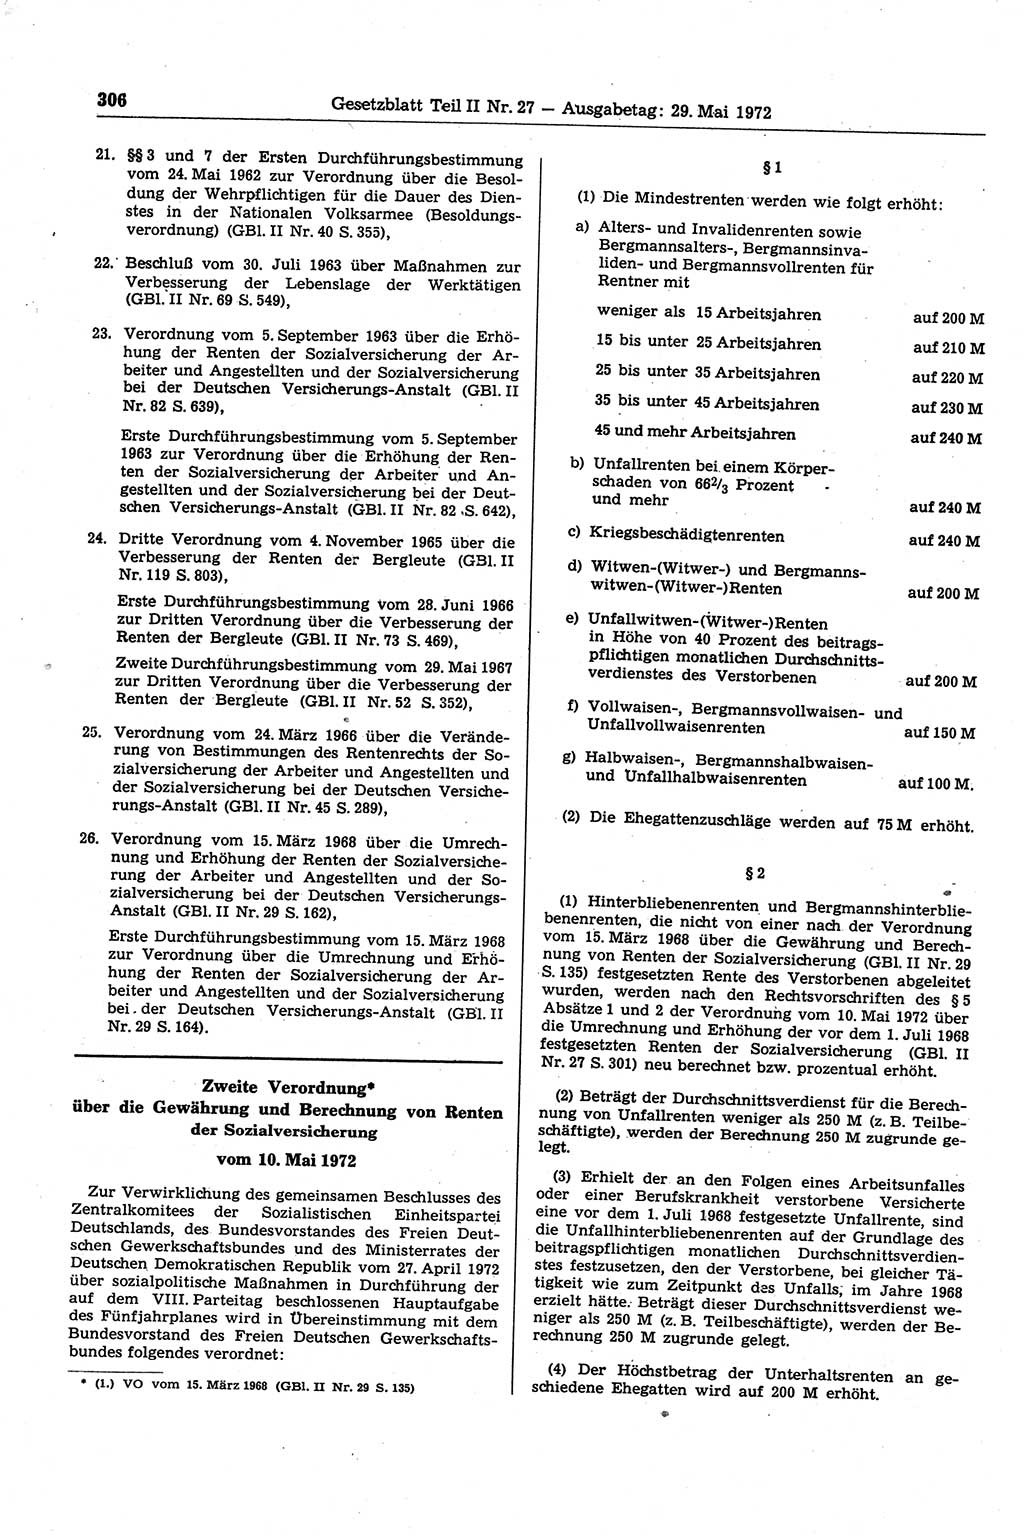 Gesetzblatt (GBl.) der Deutschen Demokratischen Republik (DDR) Teil ⅠⅠ 1972, Seite 306 (GBl. DDR ⅠⅠ 1972, S. 306)